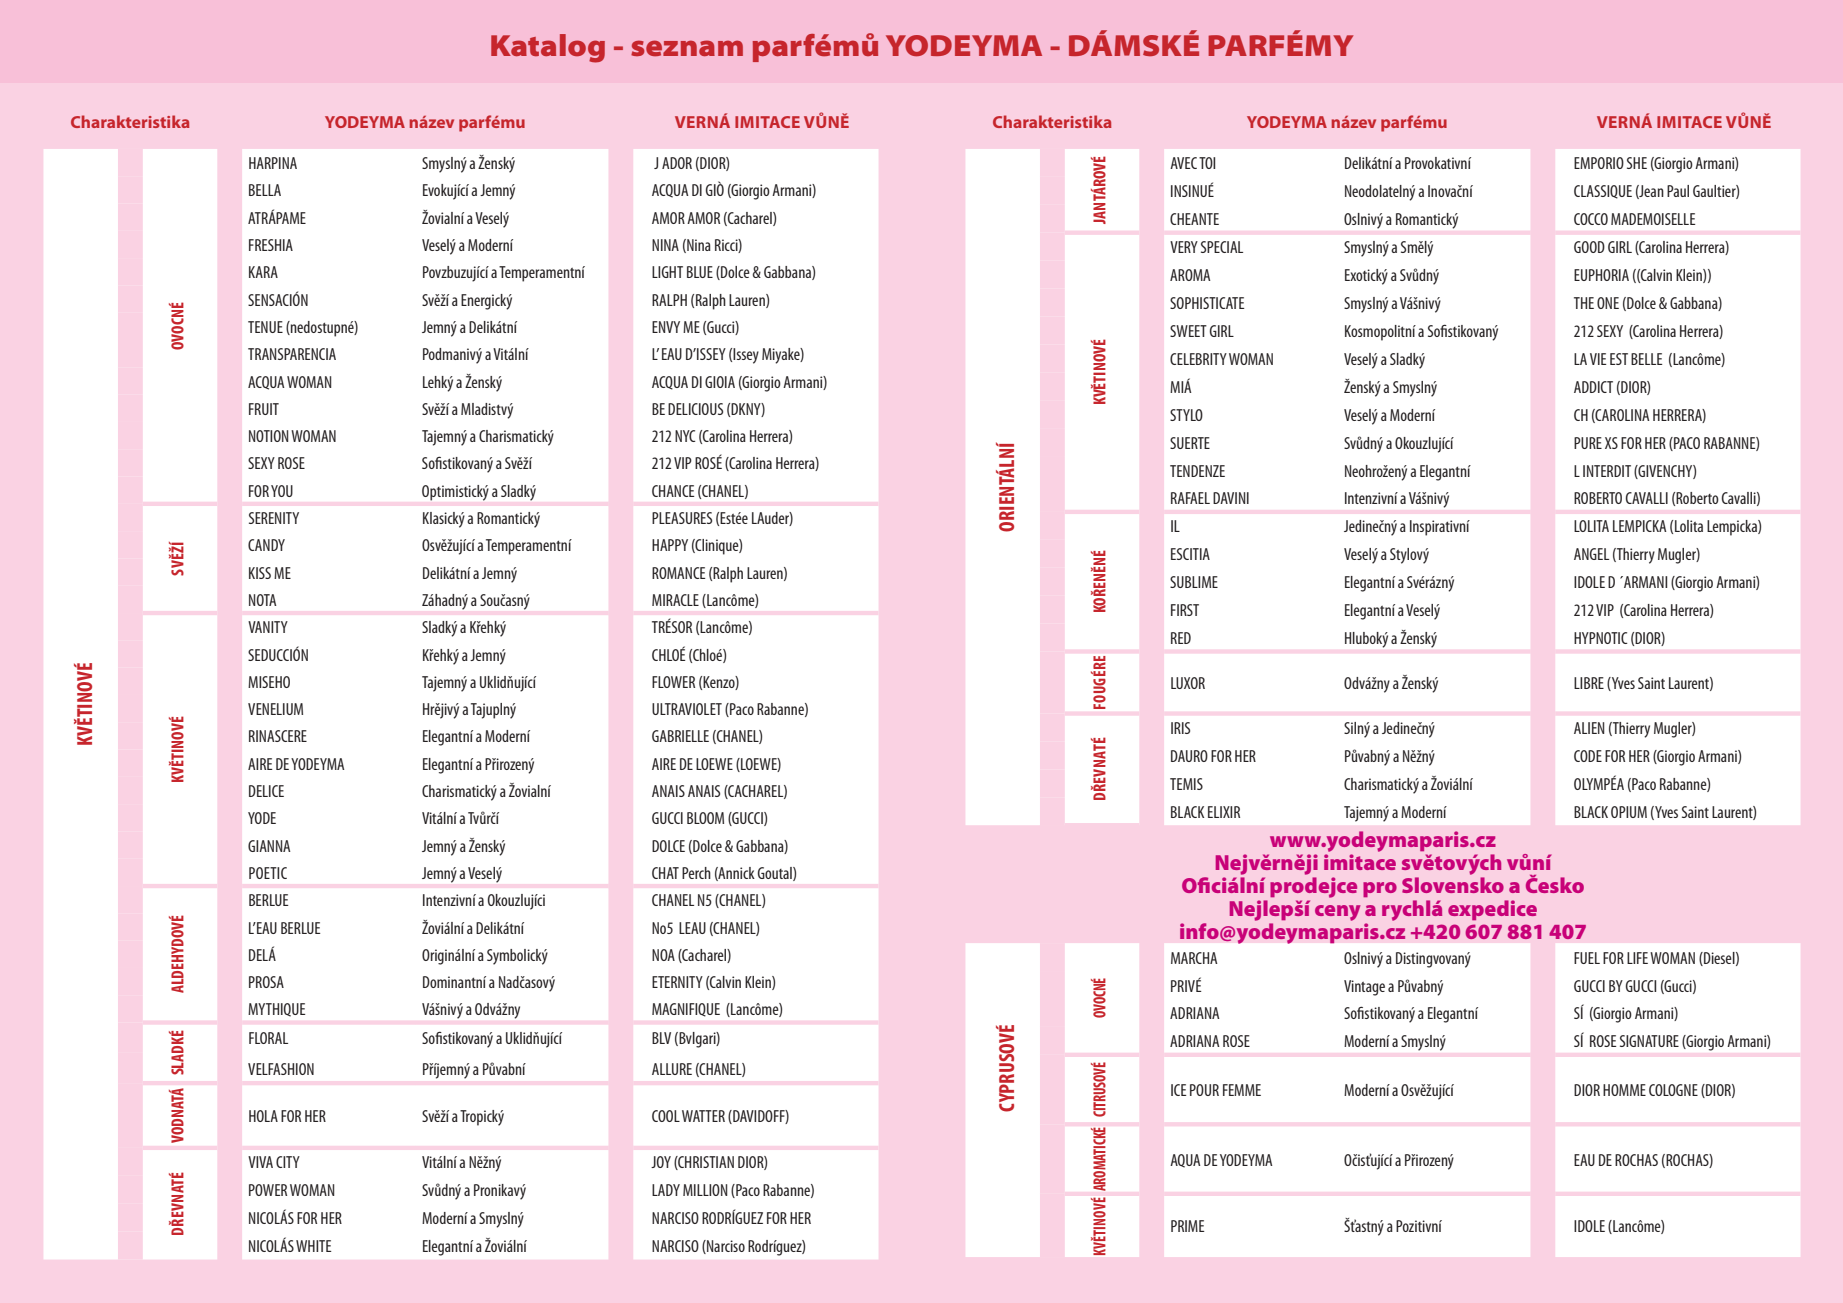 Katalog Yodeyma parfémů 2021